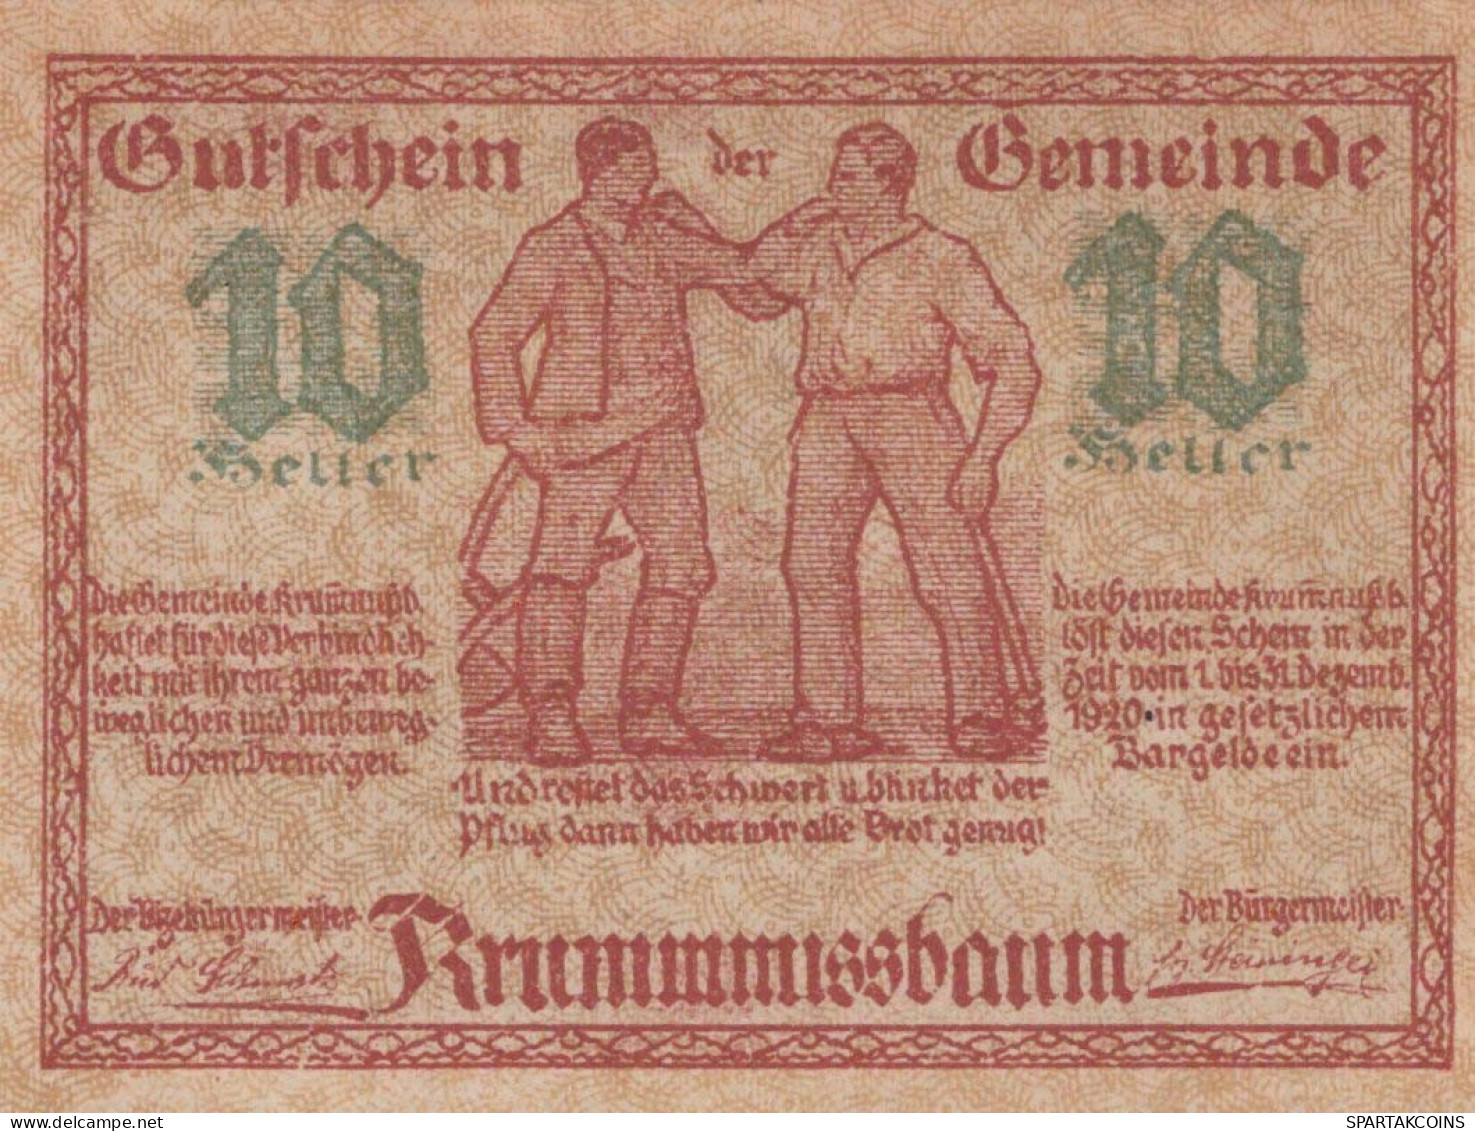 10 HELLER 1920 Stadt KRUMMNUSSBAUM Niedrigeren Österreich Notgeld #PI275 - [11] Emissioni Locali